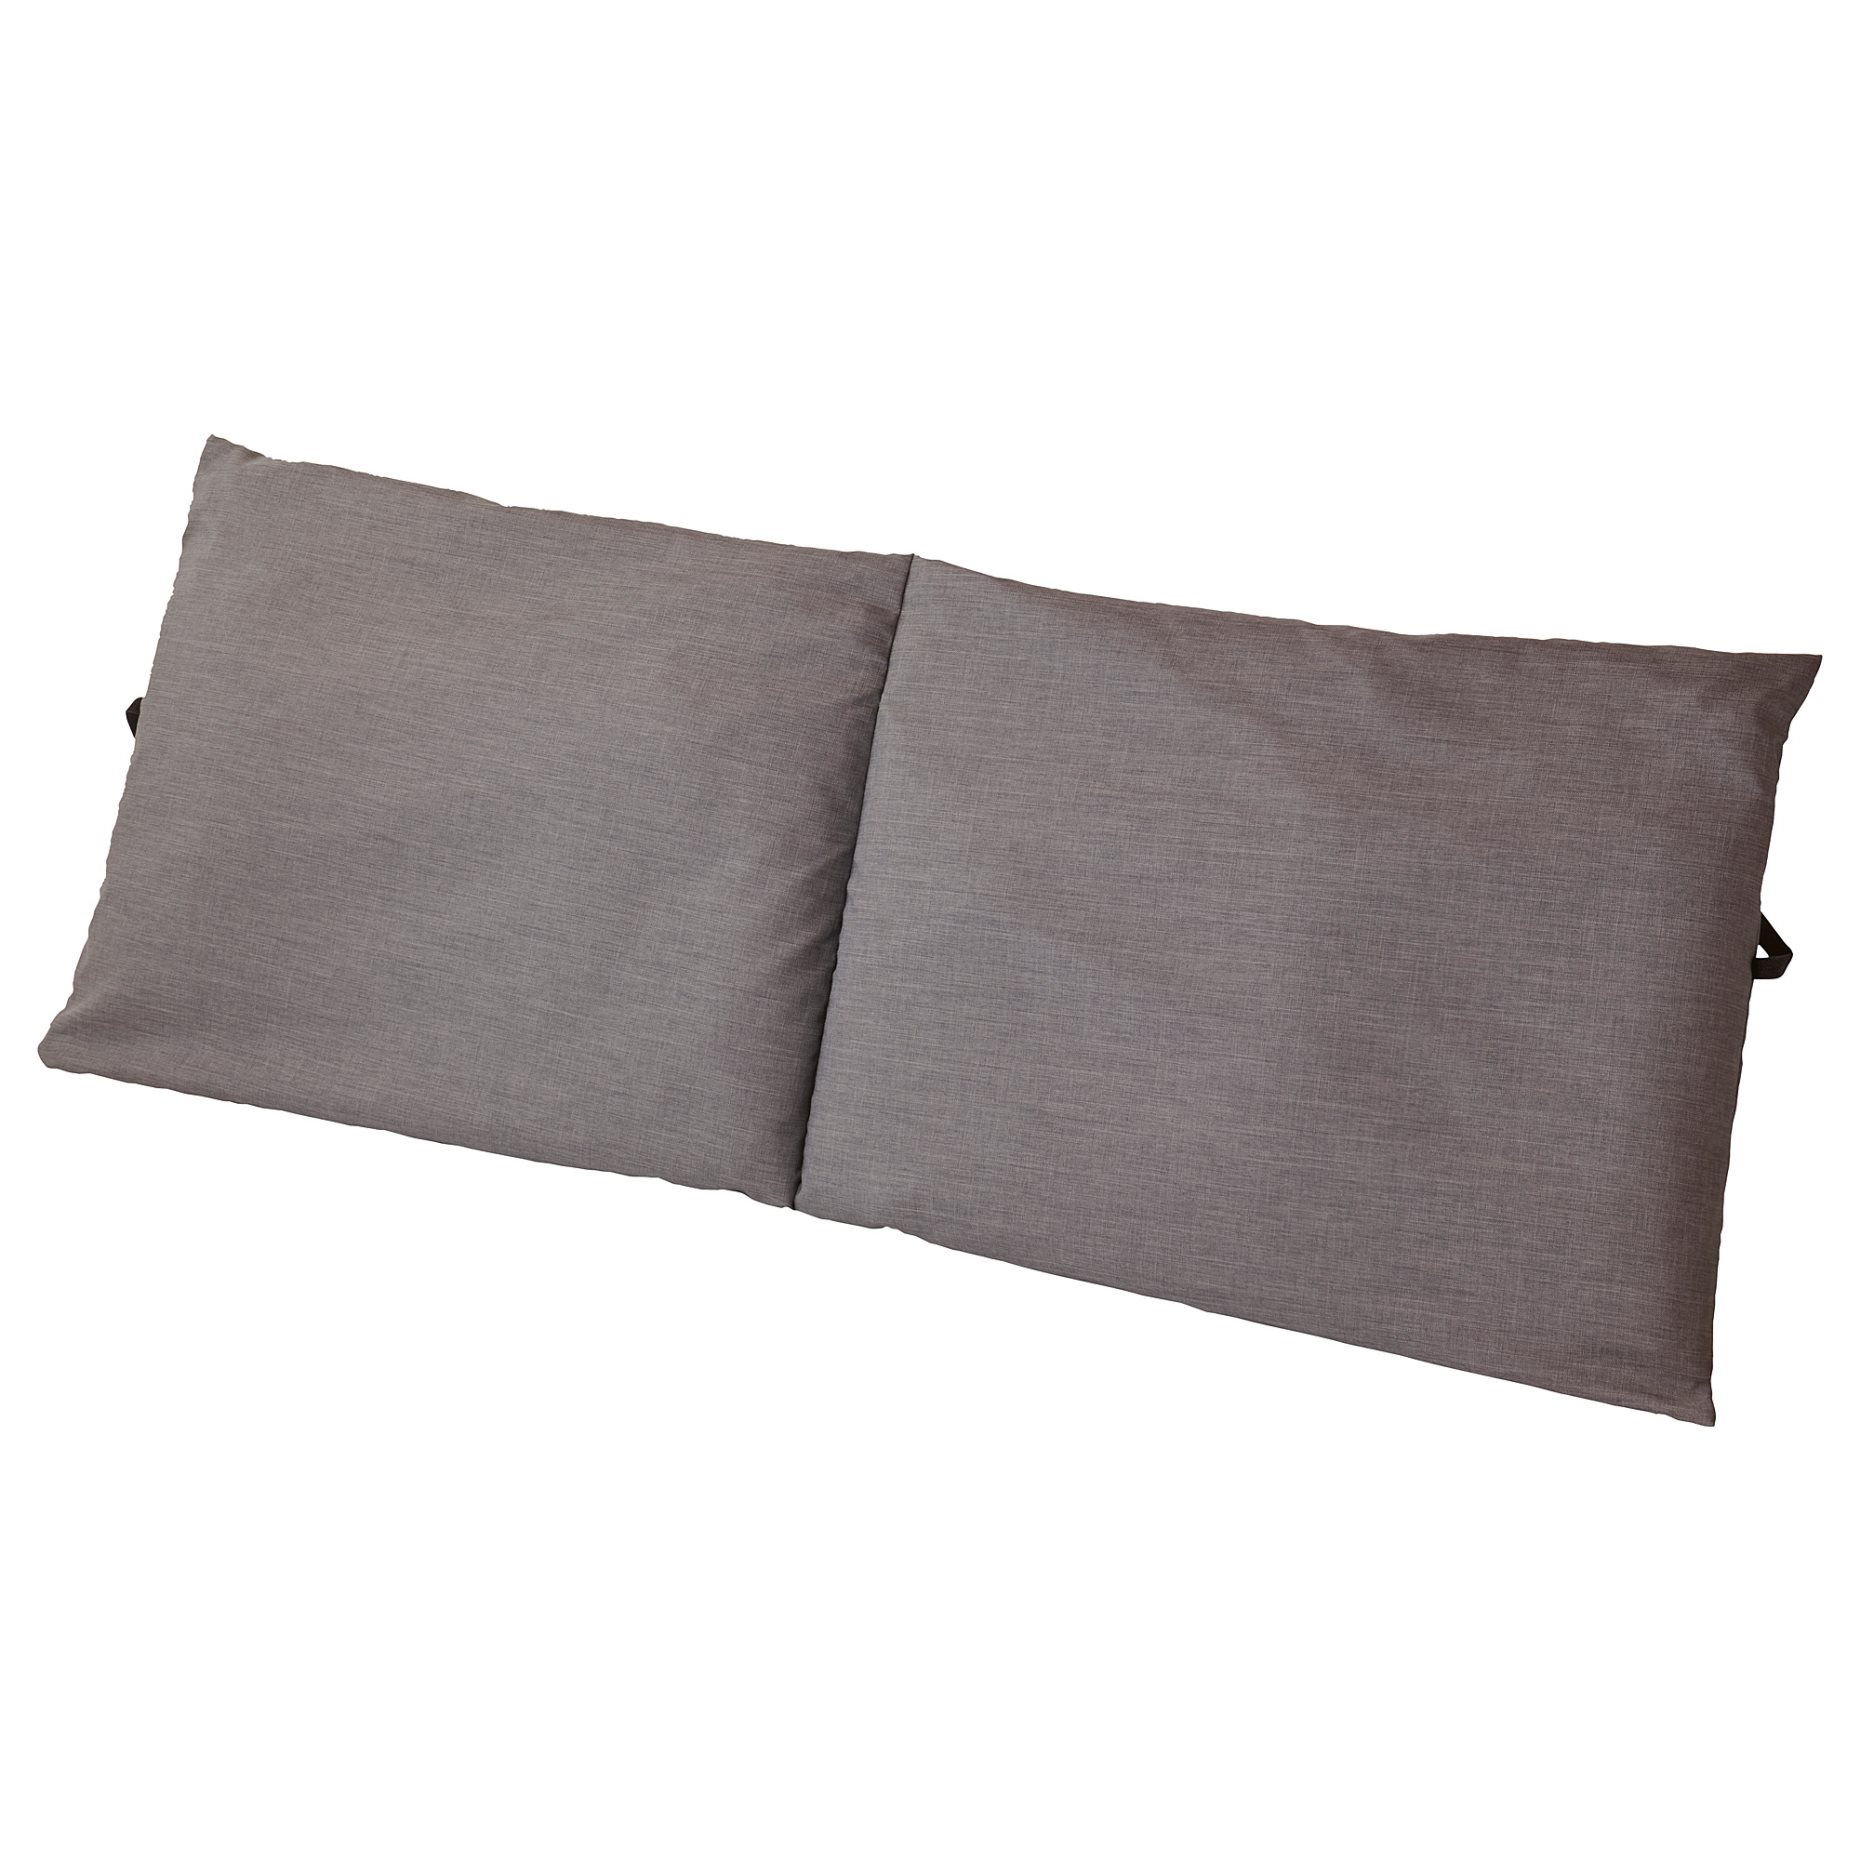 MALM, headboard cushion, 160 cm, 705.018.38